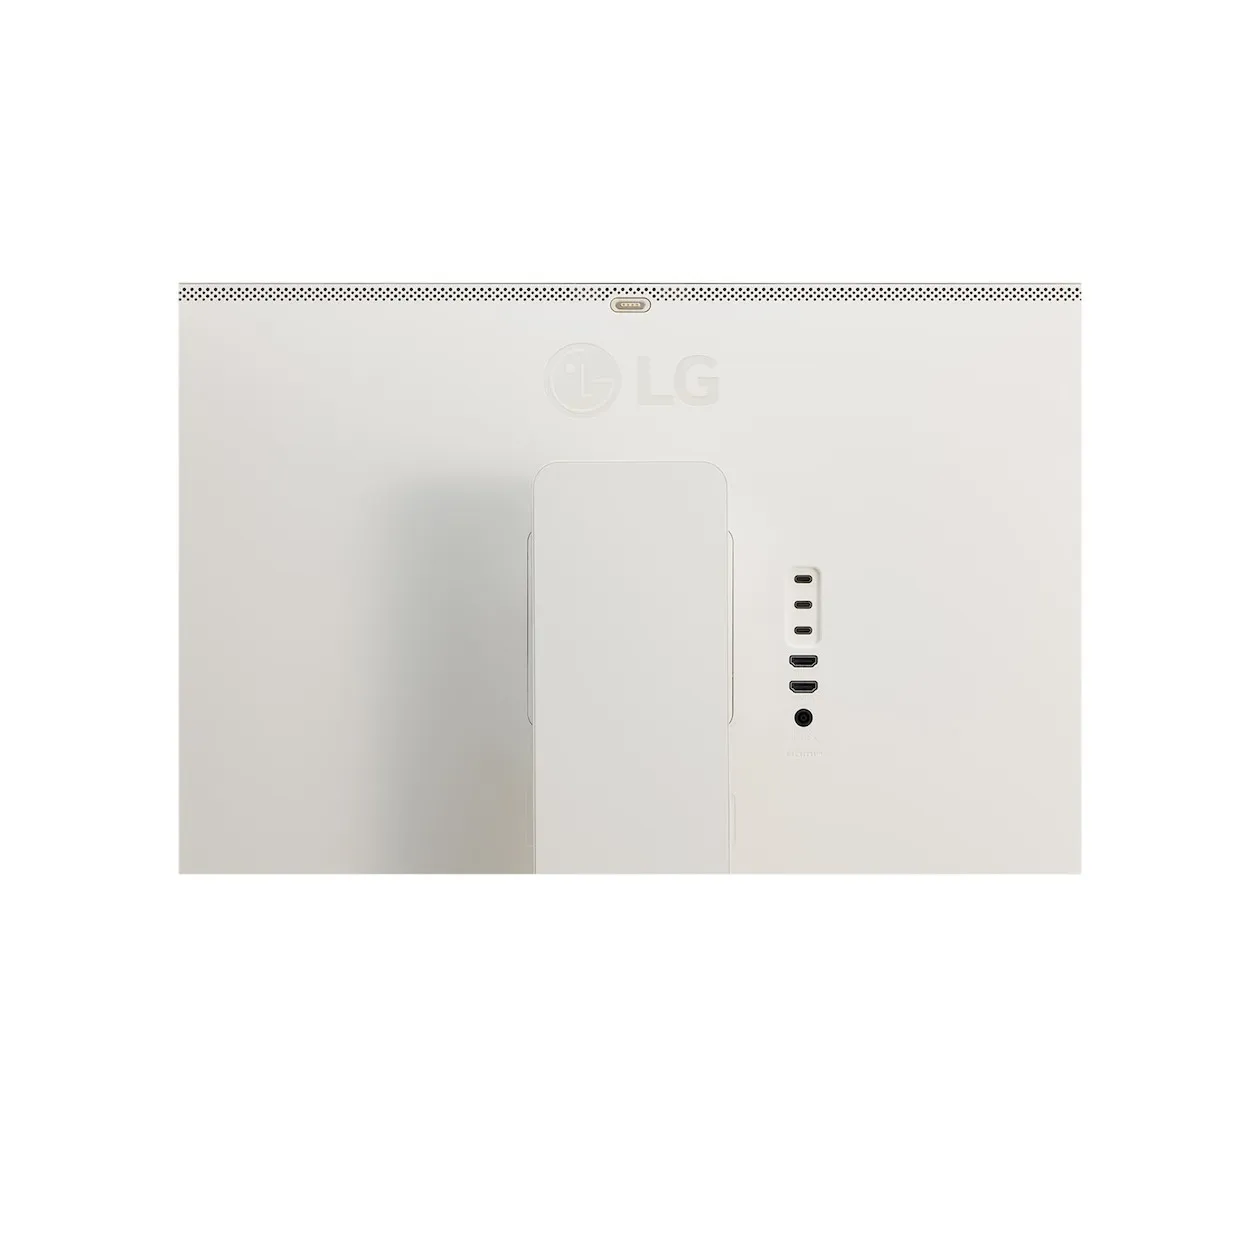 LG Smart Monitor 32SR83U-W